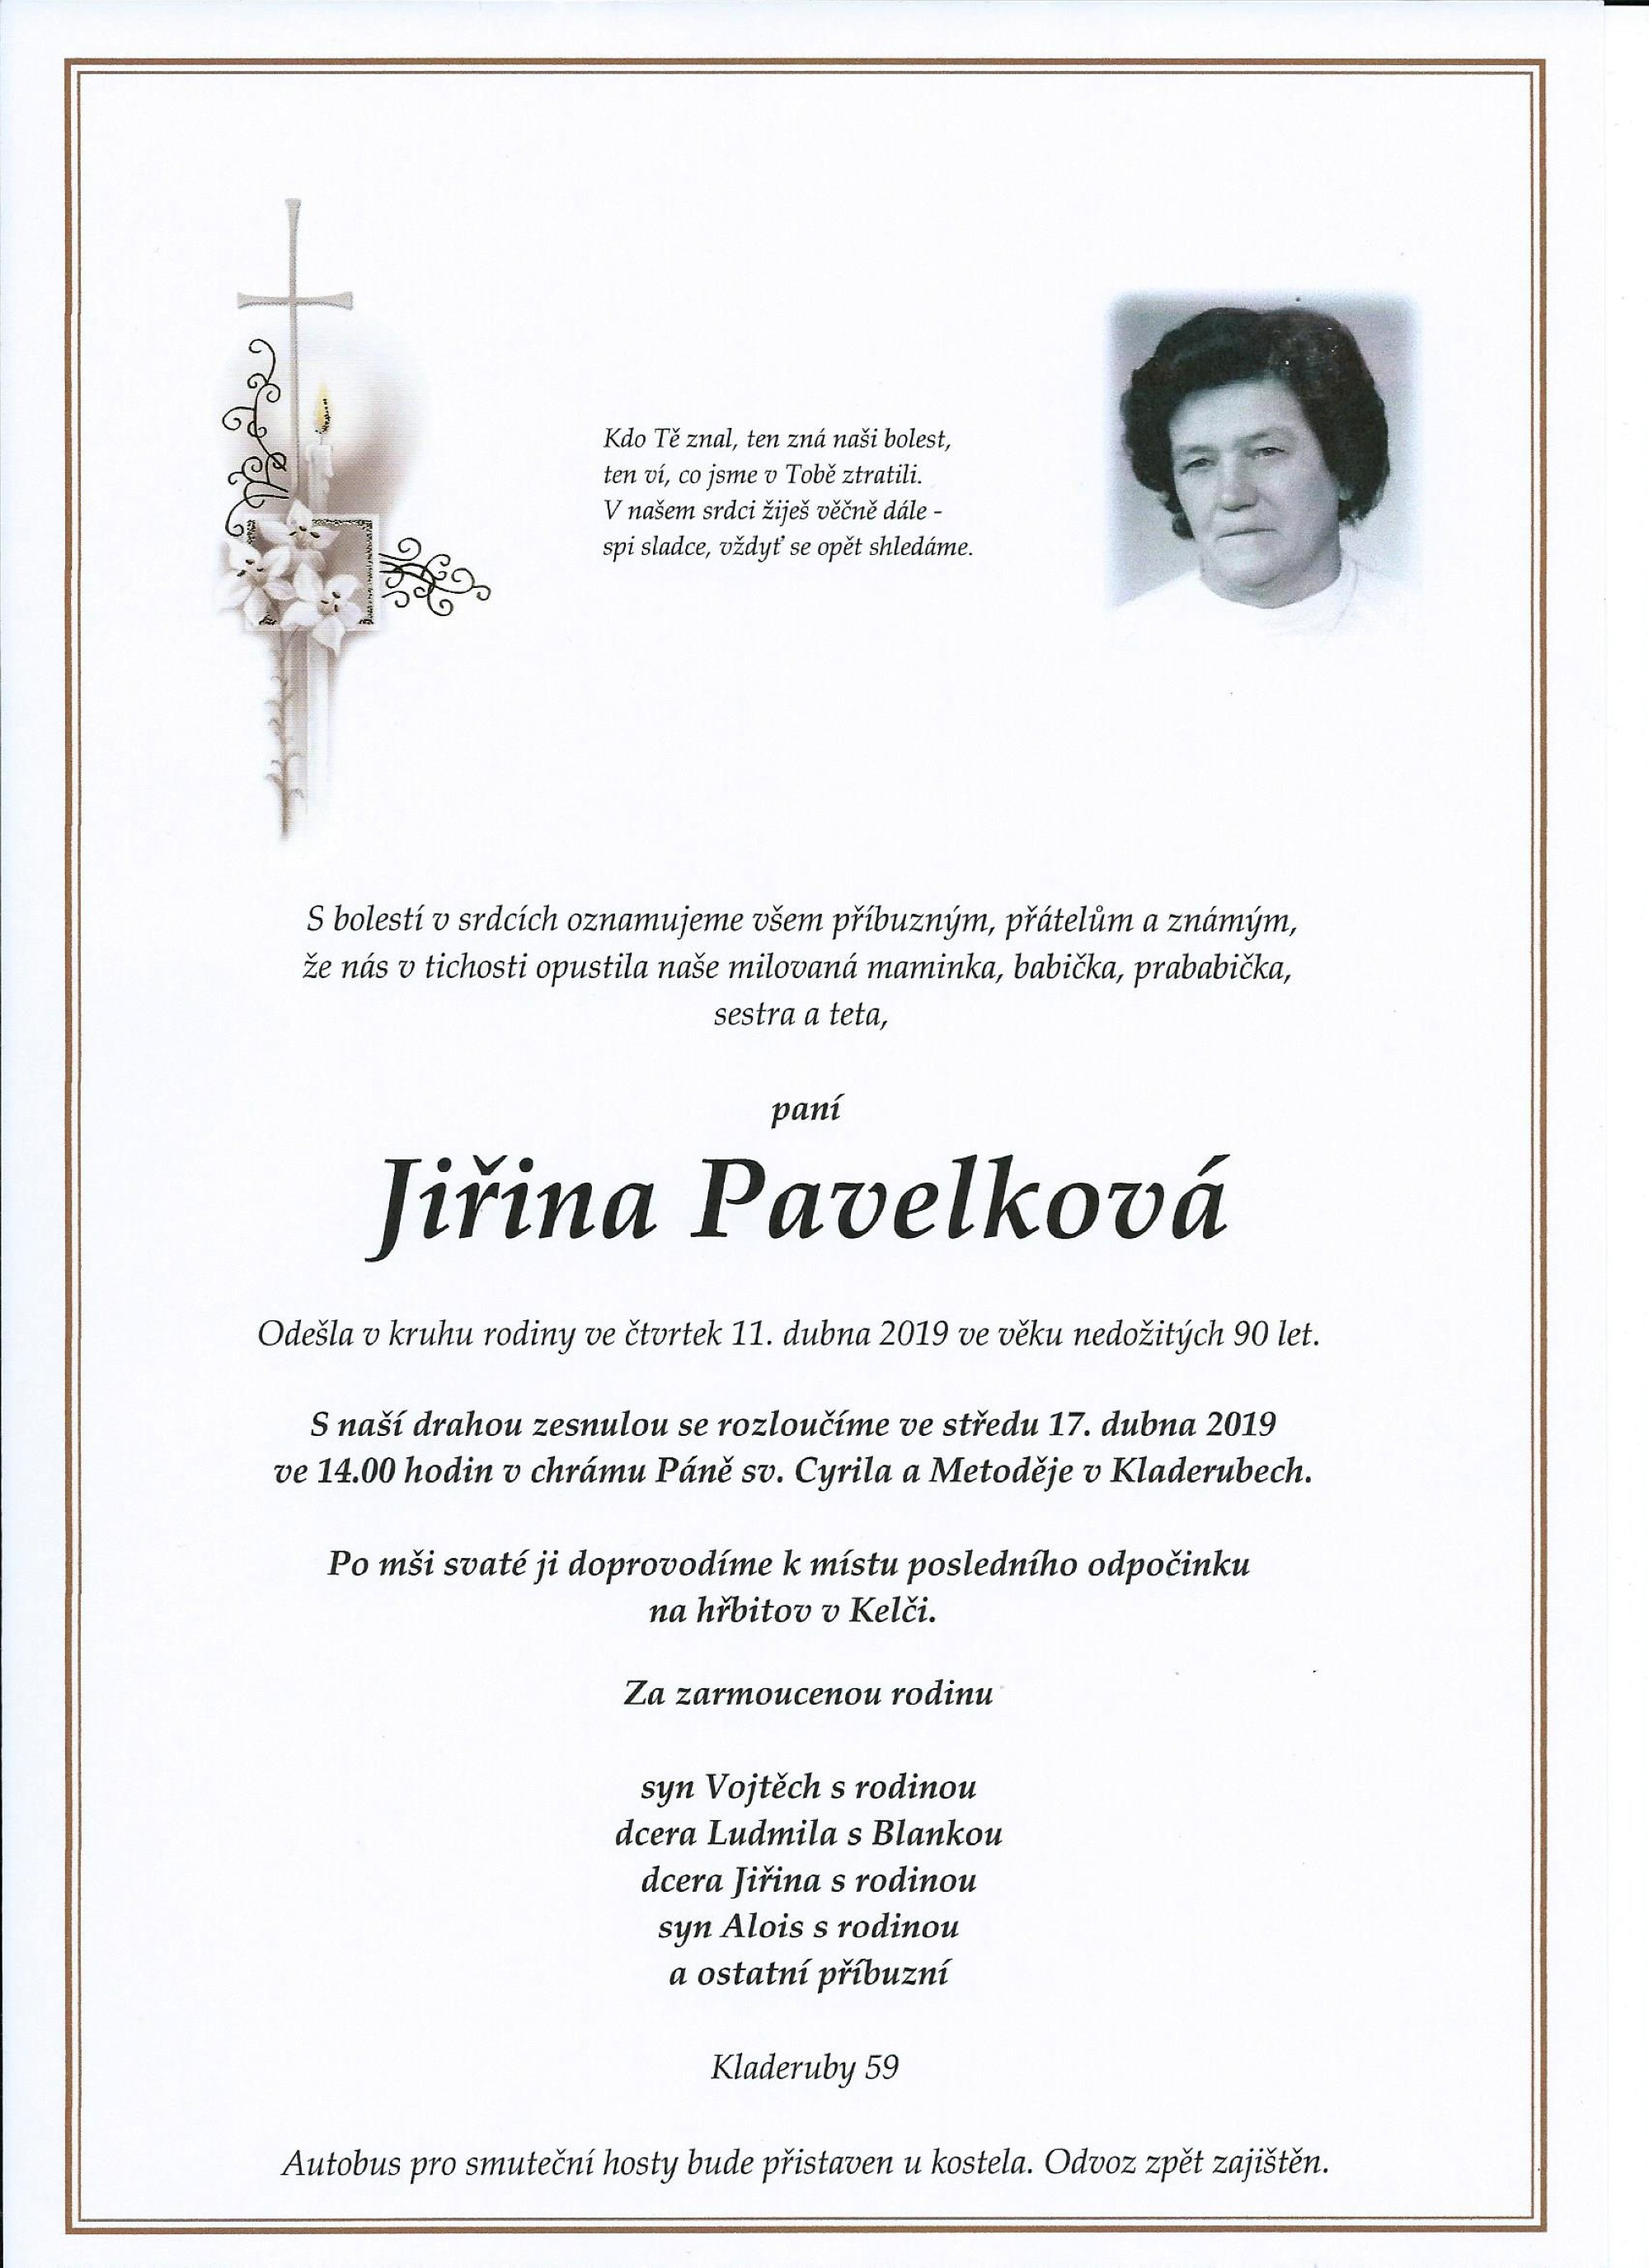 Jiřina Pavelková